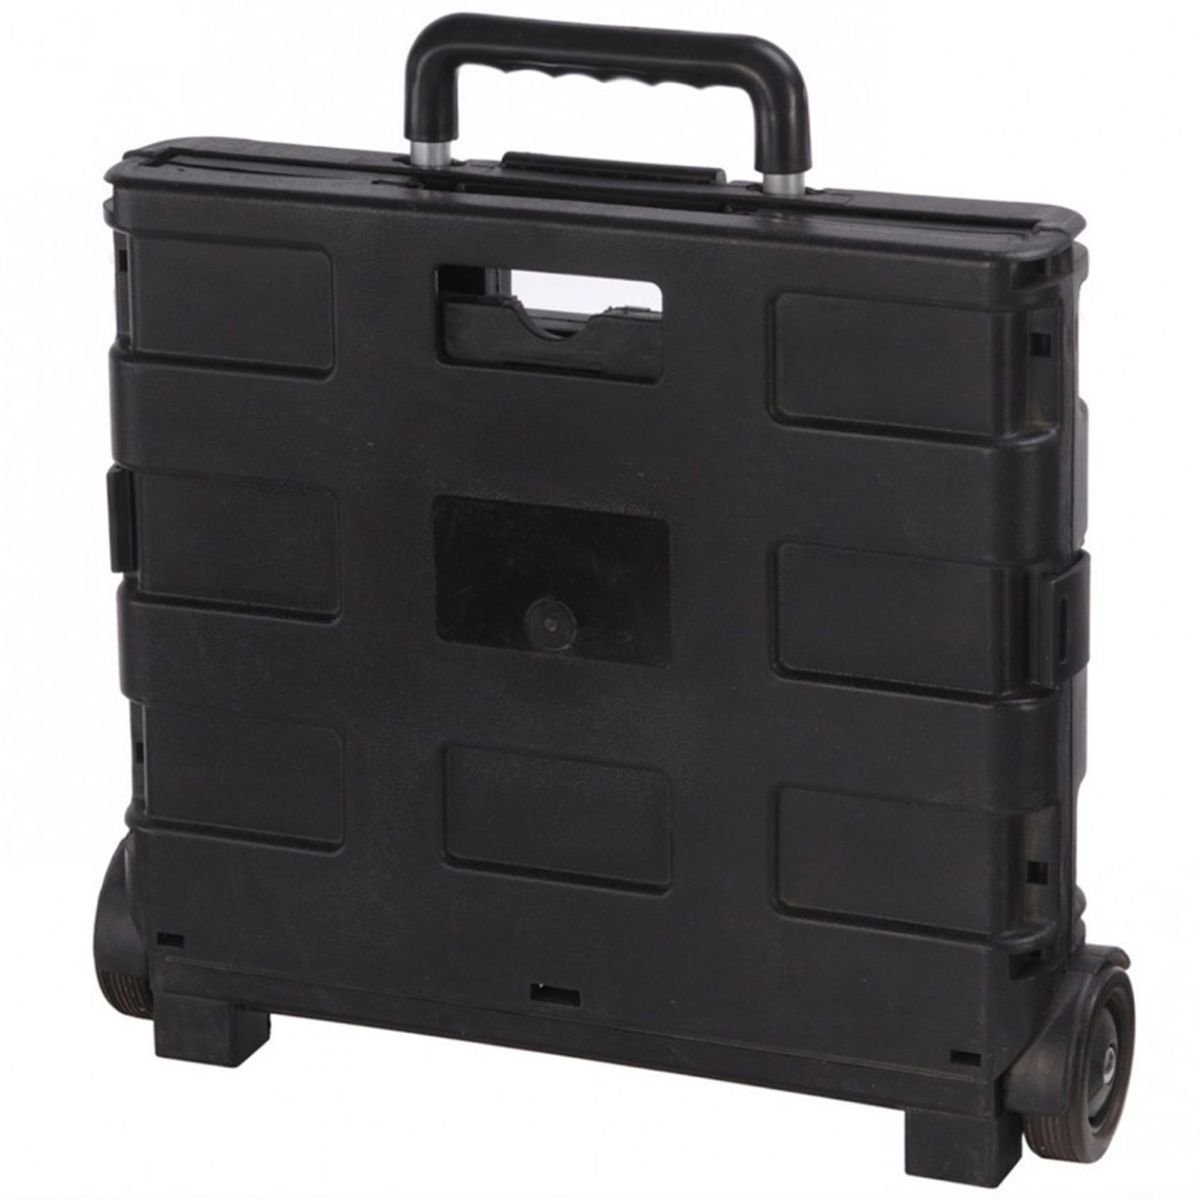 H&S Collection Einkaufsshopper Trolley 18 Kunststoff schwarz max. Faltbar mit Einkaufstrolley, 30L Klappbox kg